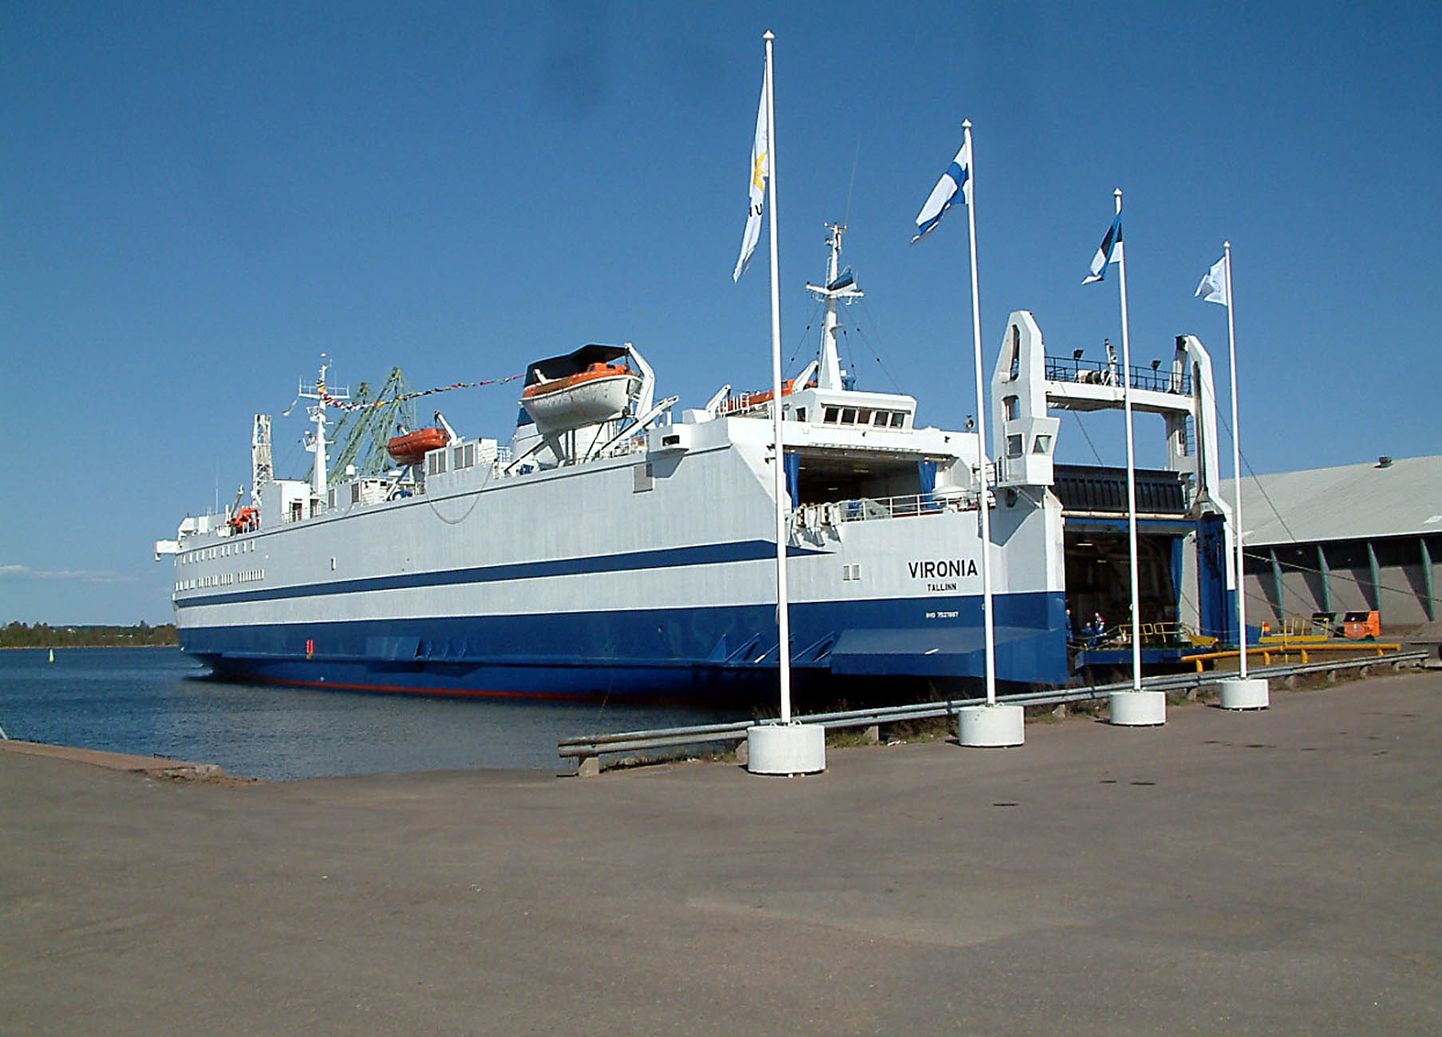 Пассажирское судоходство между Силламяэ и Котка осуществлялось до осени 2007 года, когда его обслуживало судно "Vironia" компании "Saaremaa Laevakompanii".